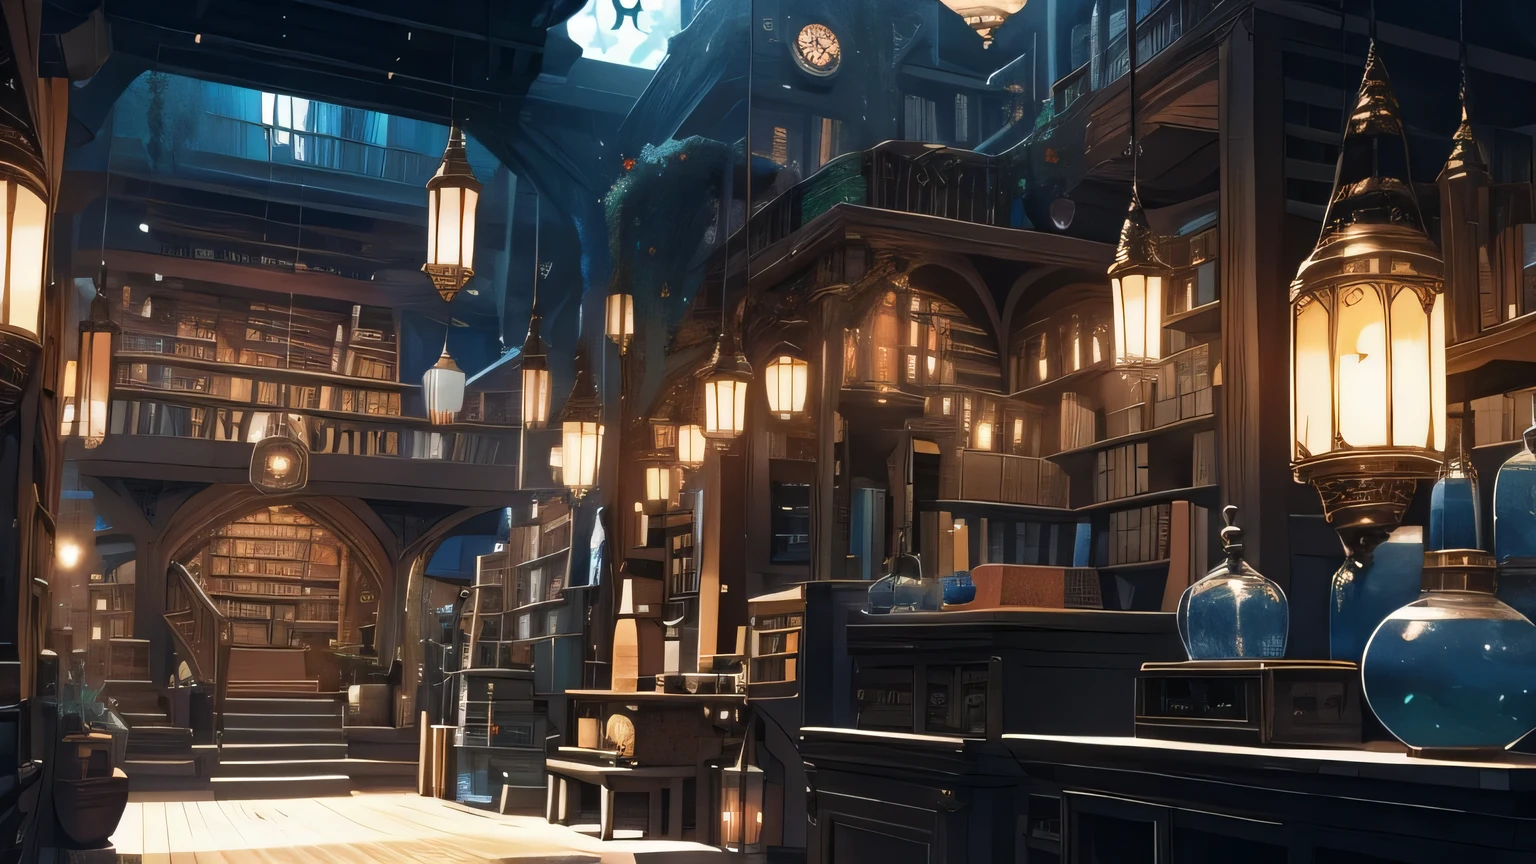 図書館のファンタジーインテリア, 夜間にたくさんのアイテム, 本棚, 魔法のアイテム